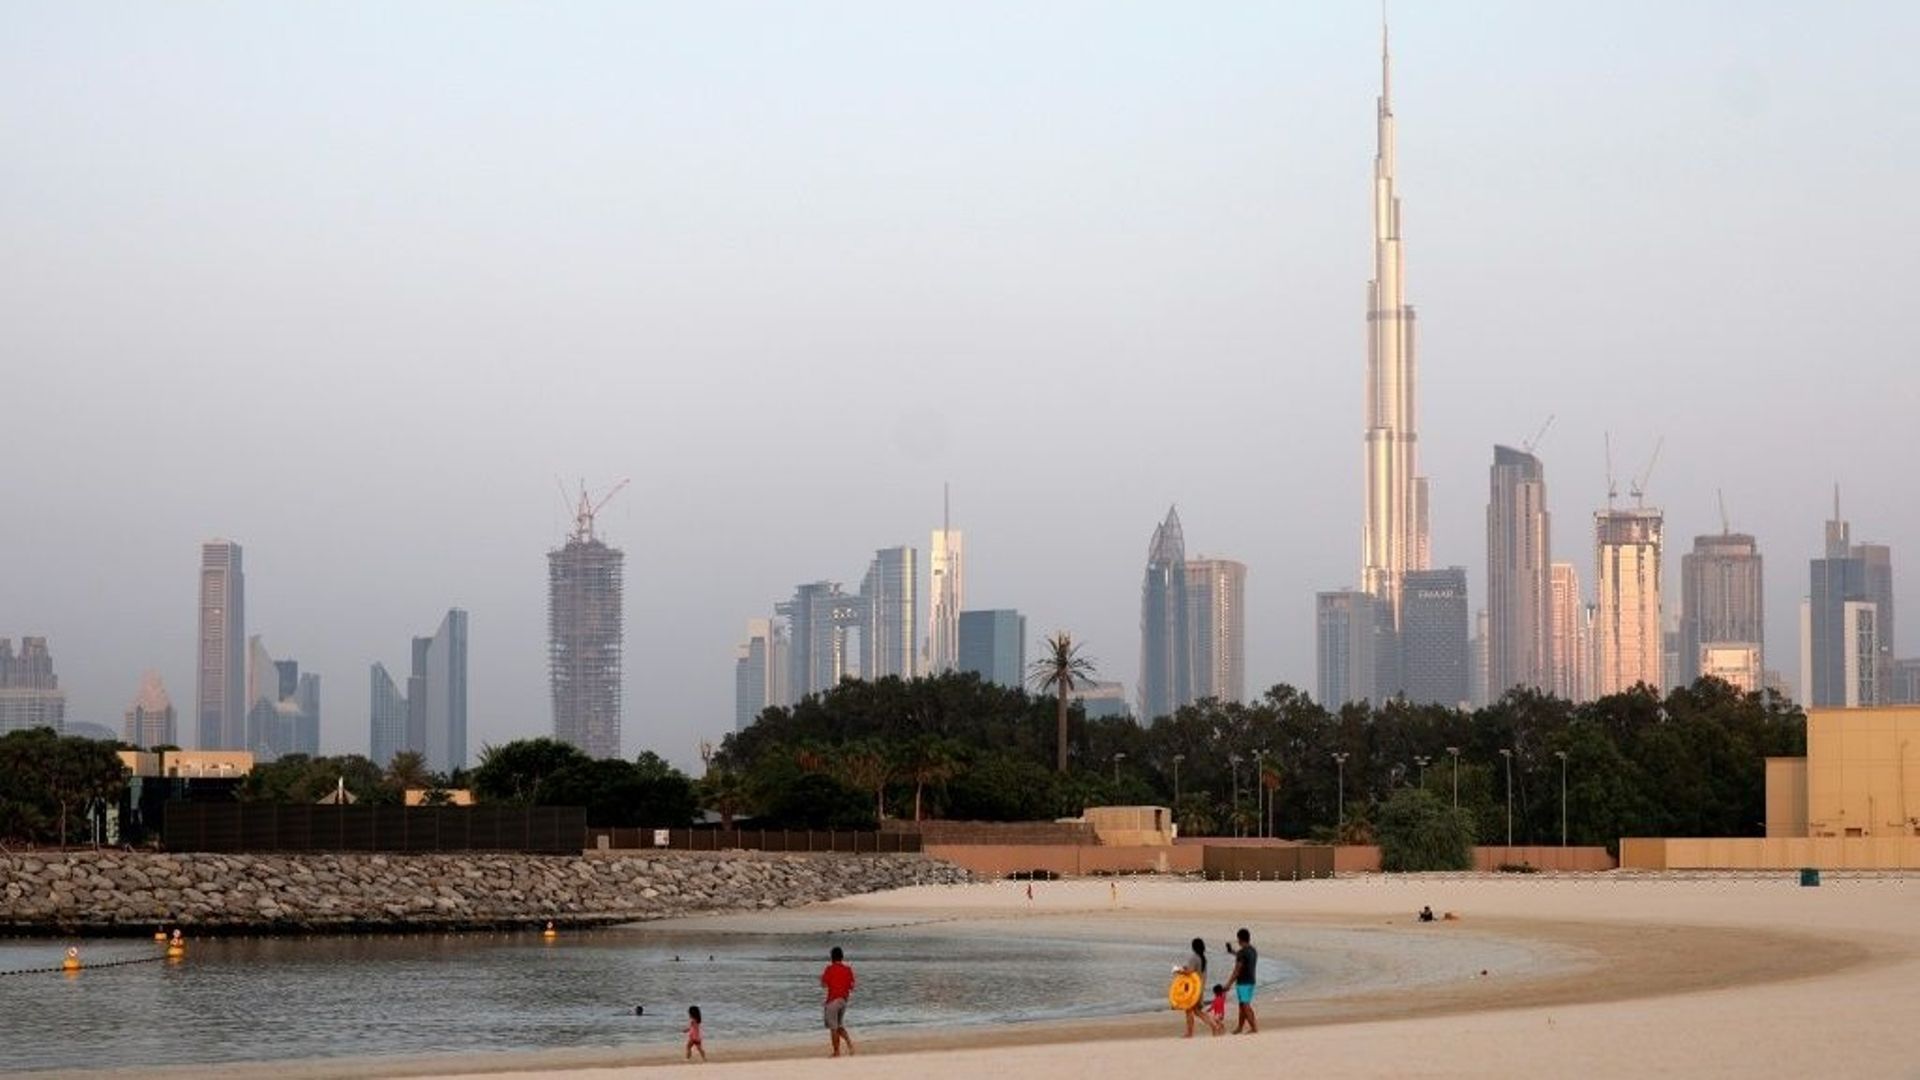 La fièvre du Mondial 2022 s'empare de Dubaï, qui cherche à attirer les supporters.